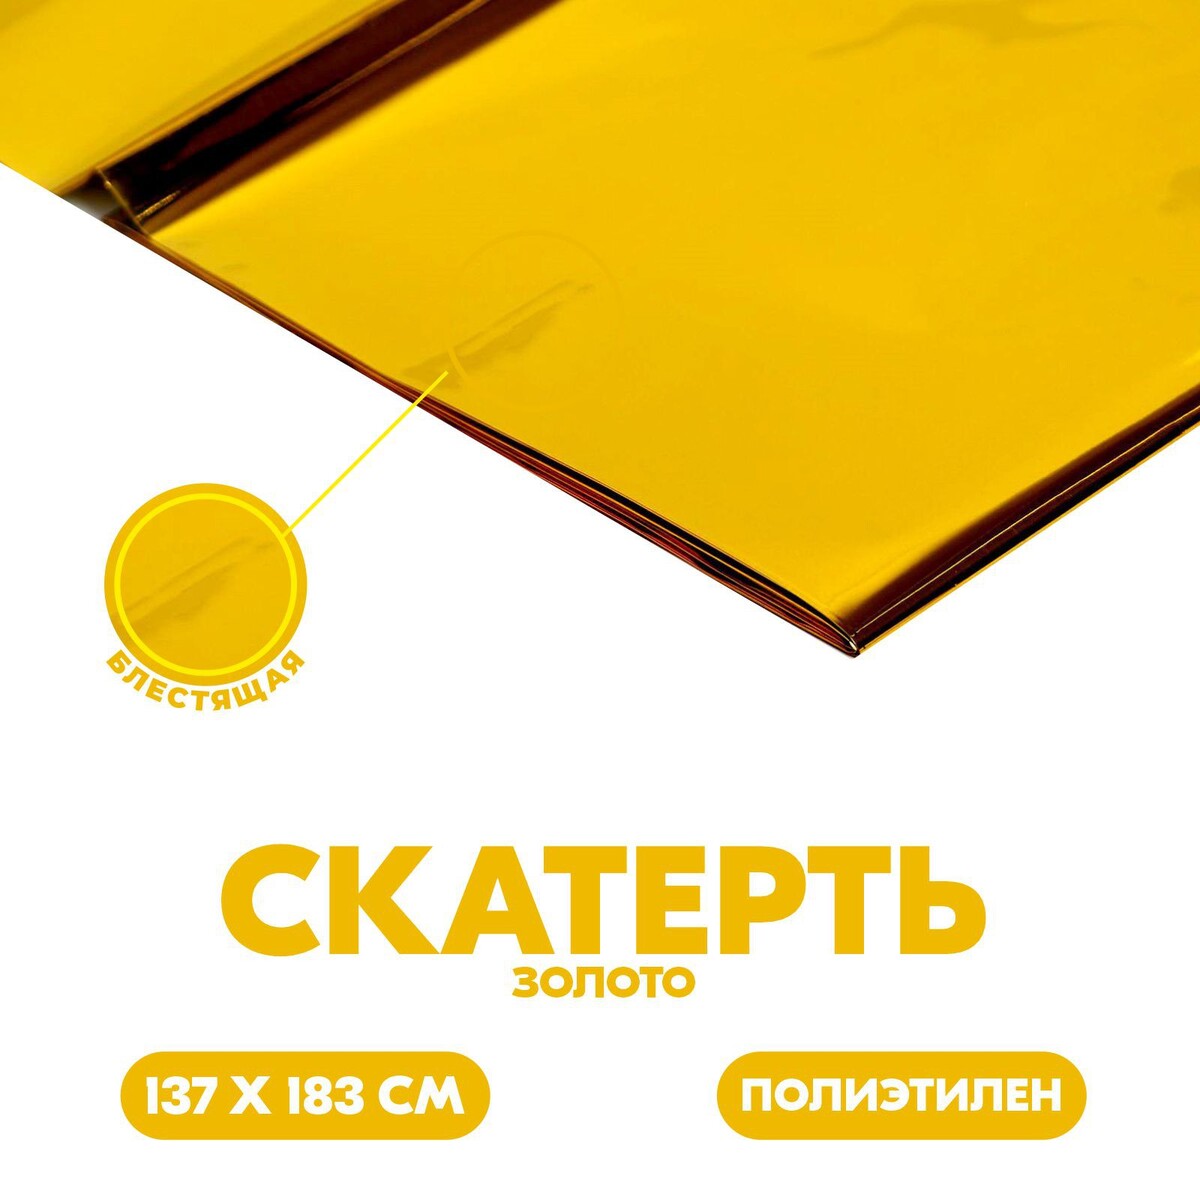 Скатерть блестящая, 137 × 183 см, цвет золотой